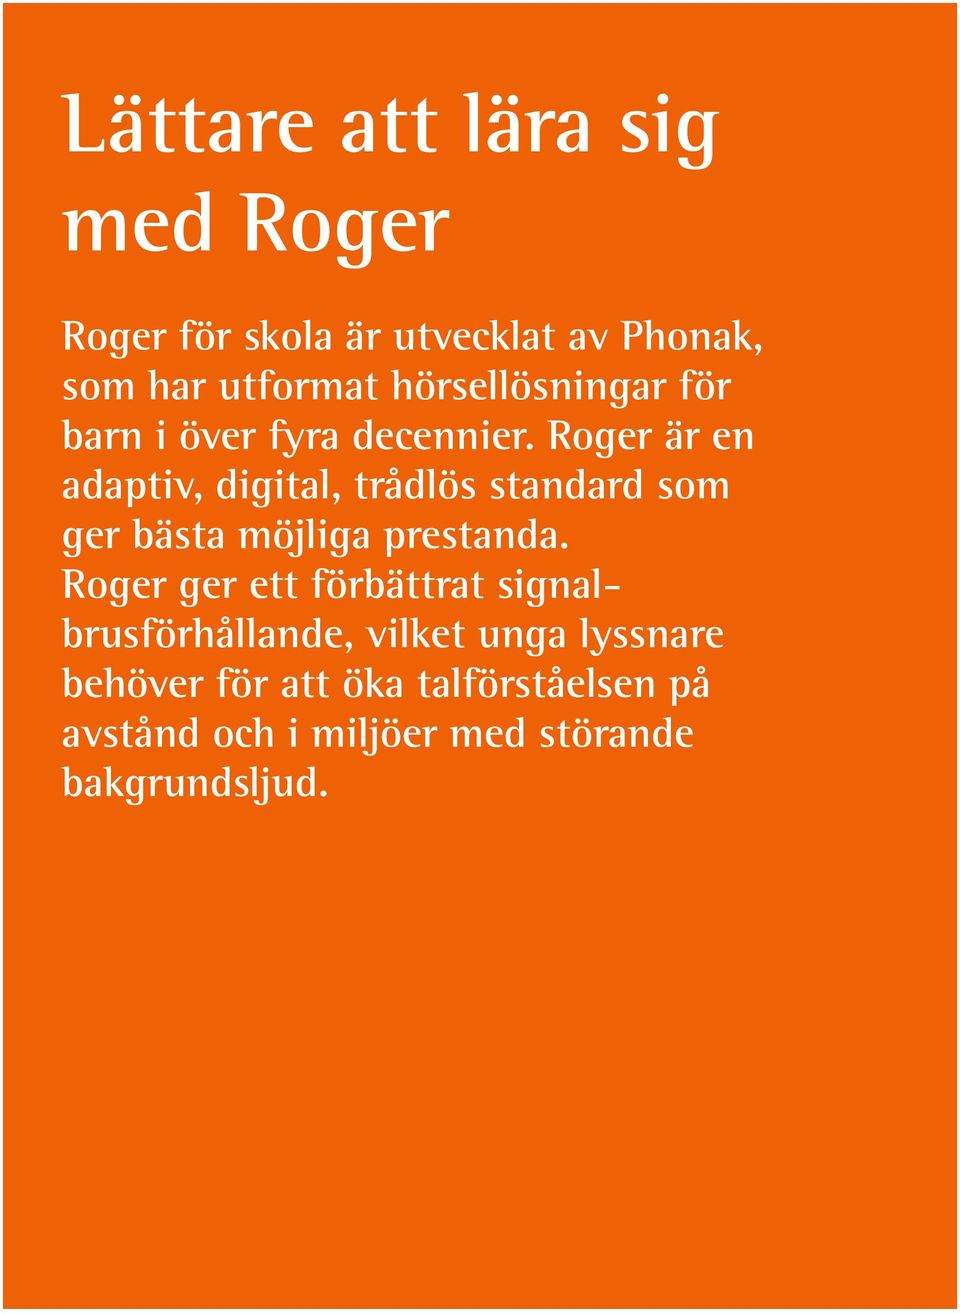 Roger är en adaptiv, digital, trådlös standard som ger bästa möjliga prestanda.